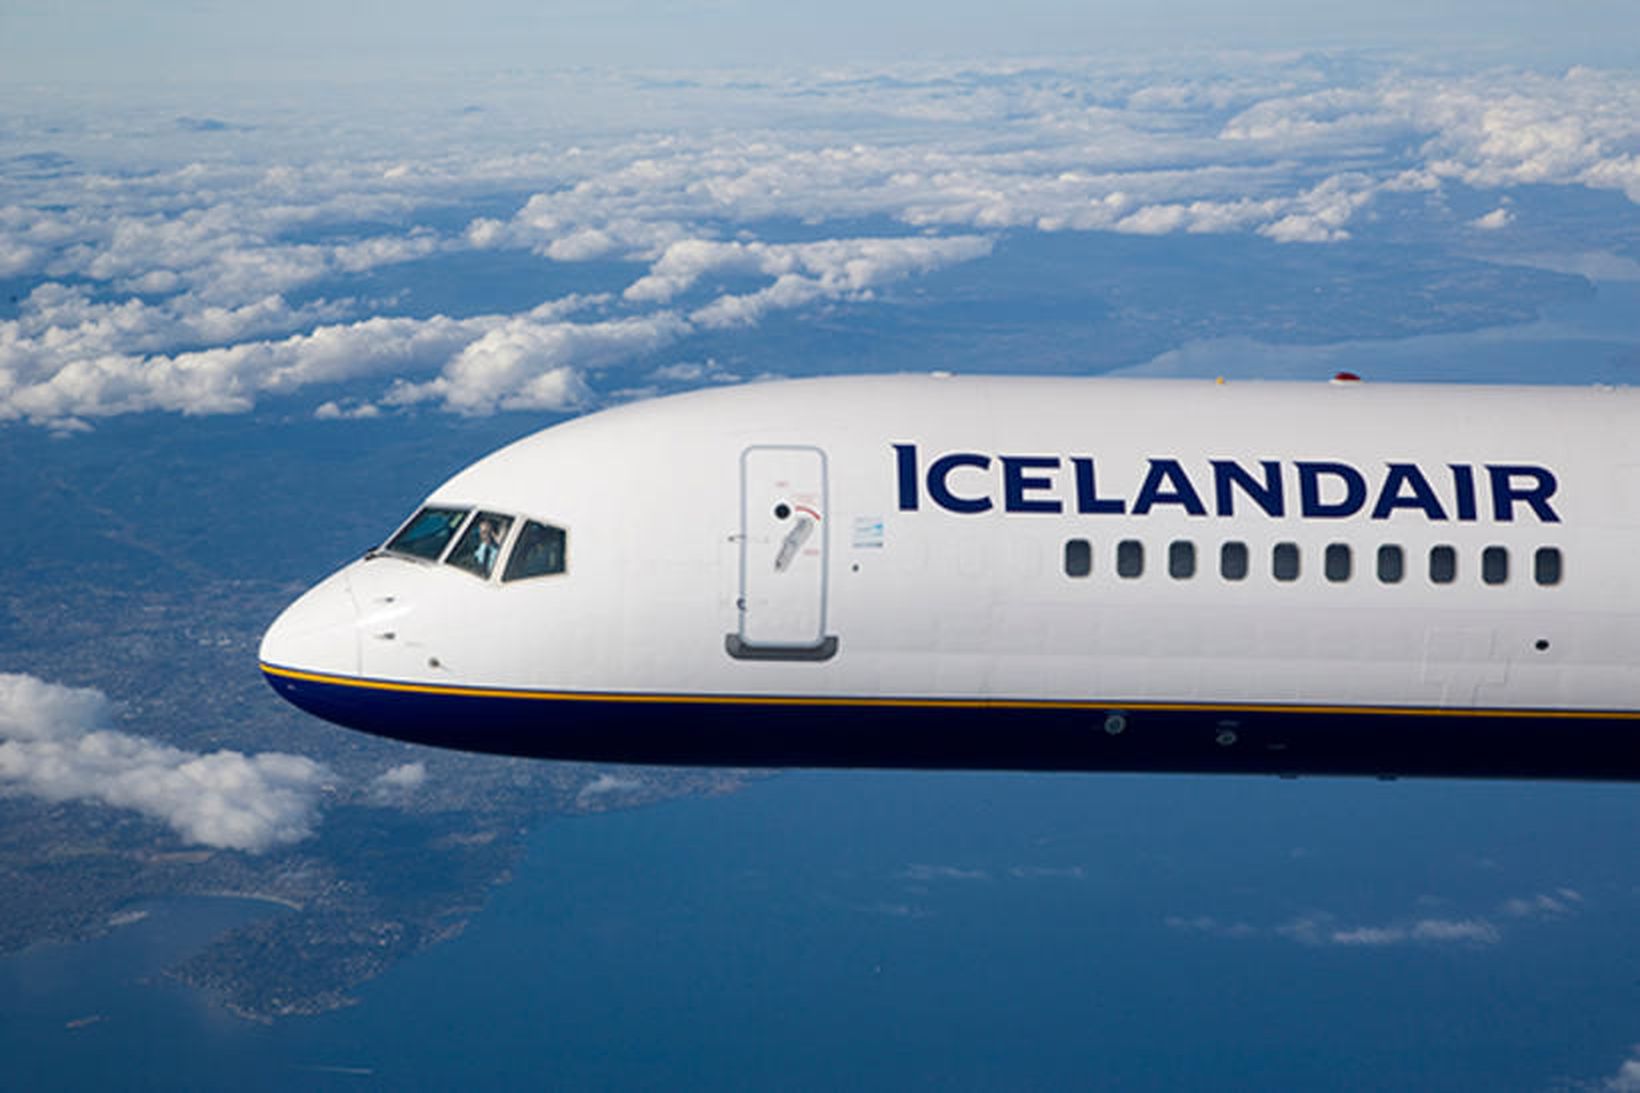 Farþegavél Icelandair í háloftunum.